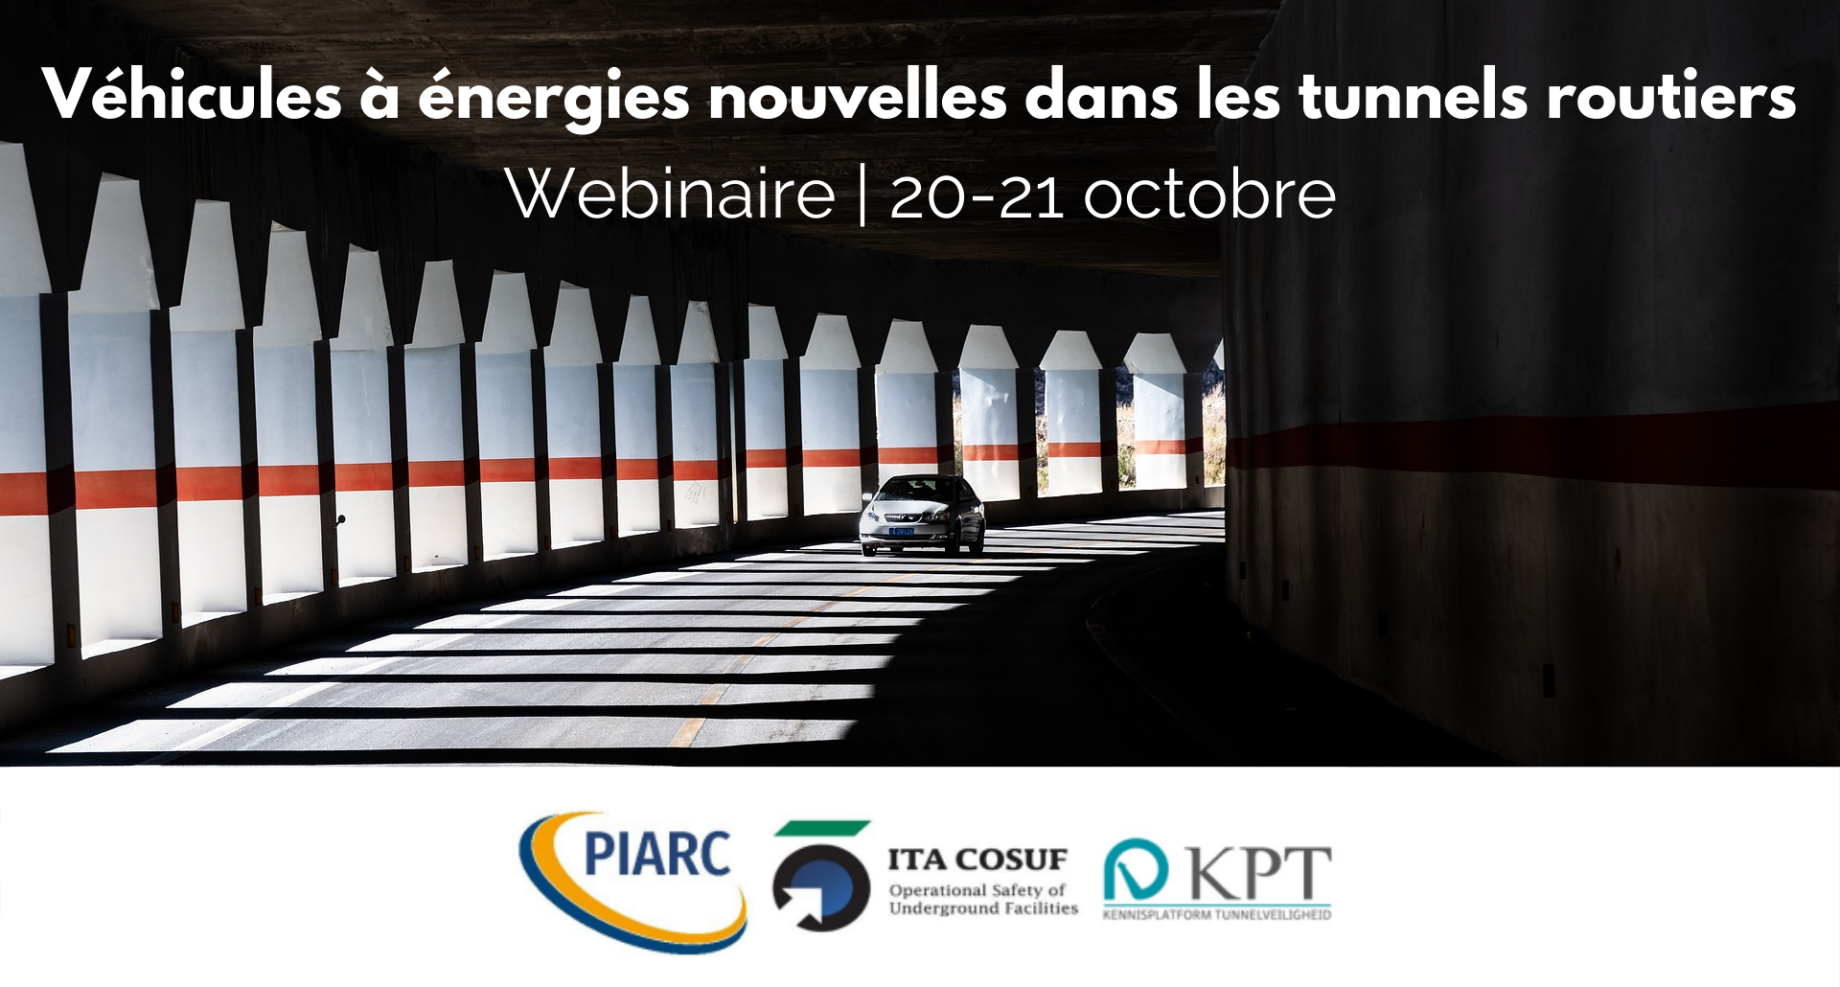 La sécurité des véhicules à énergies nouvelles dans les
tunnels, au centre du webinaire organisé par PIARC, l'ITA-COSUF et la KPT